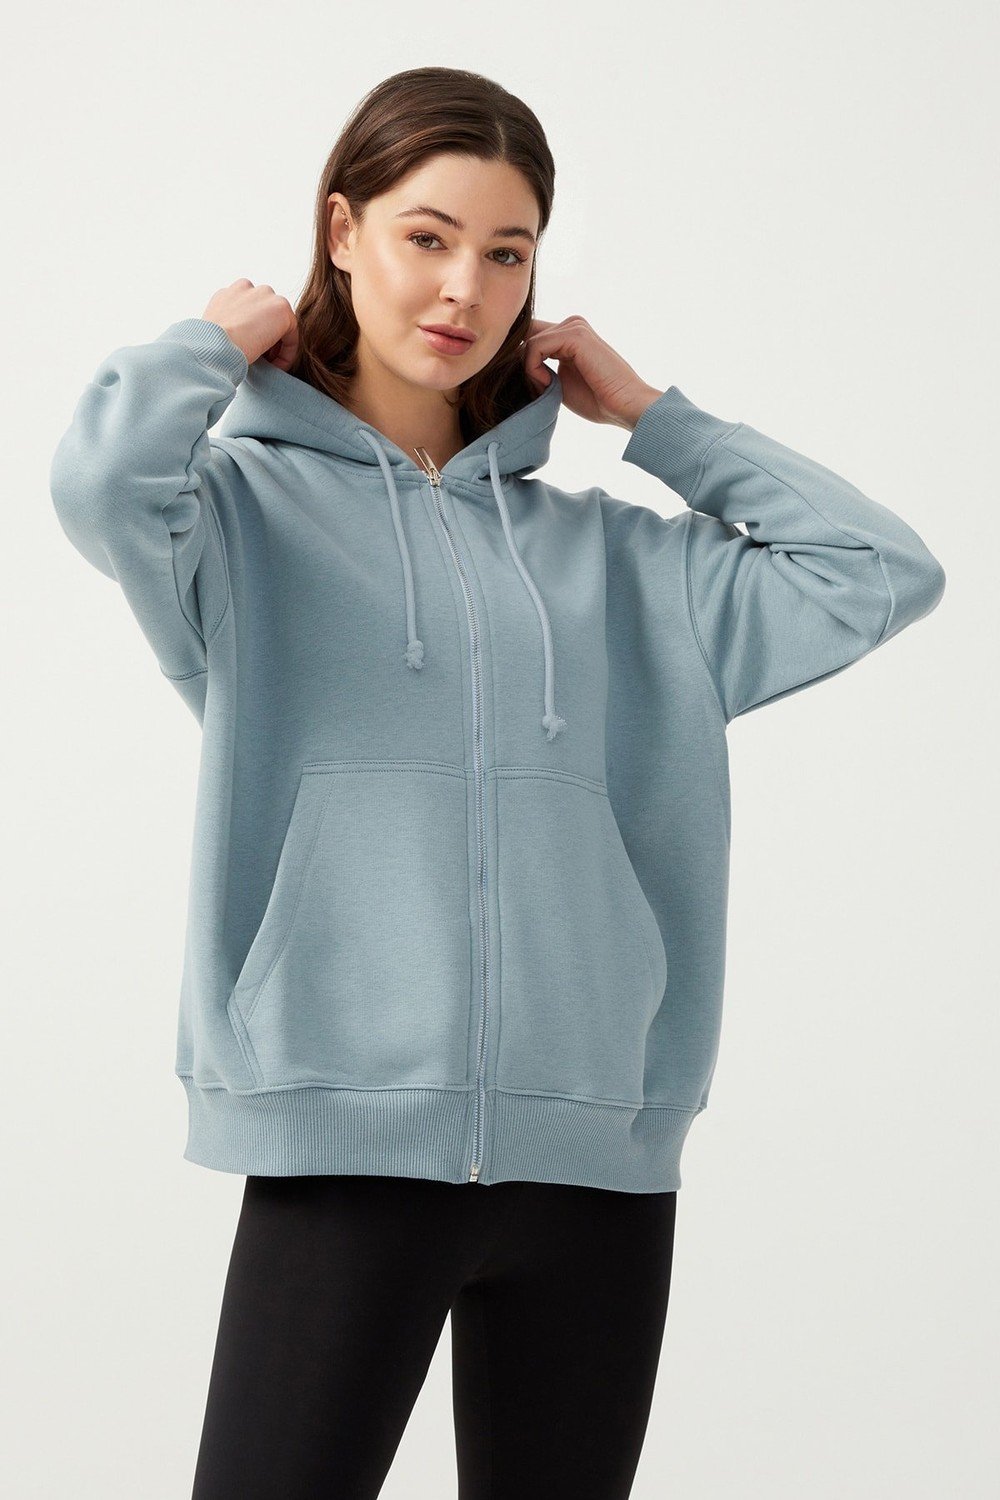 LOS OJOS Women's Blue Gray Hooded Oversize Rayon Zipper Knitted Sweatshirt.